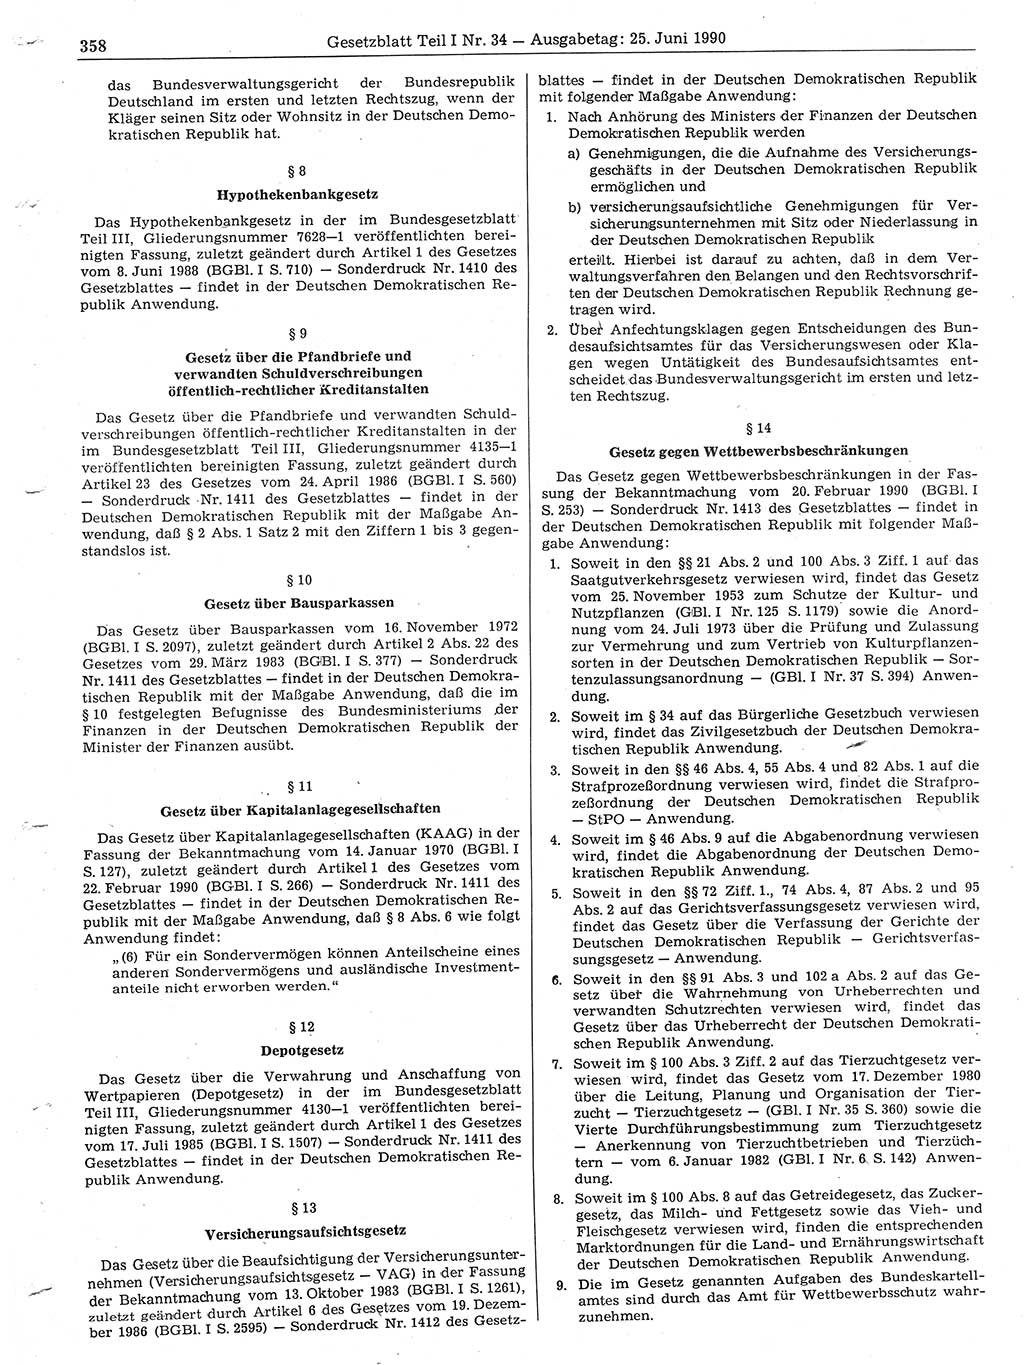 Gesetzblatt (GBl.) der Deutschen Demokratischen Republik (DDR) Teil Ⅰ 1990, Seite 358 (GBl. DDR Ⅰ 1990, S. 358)